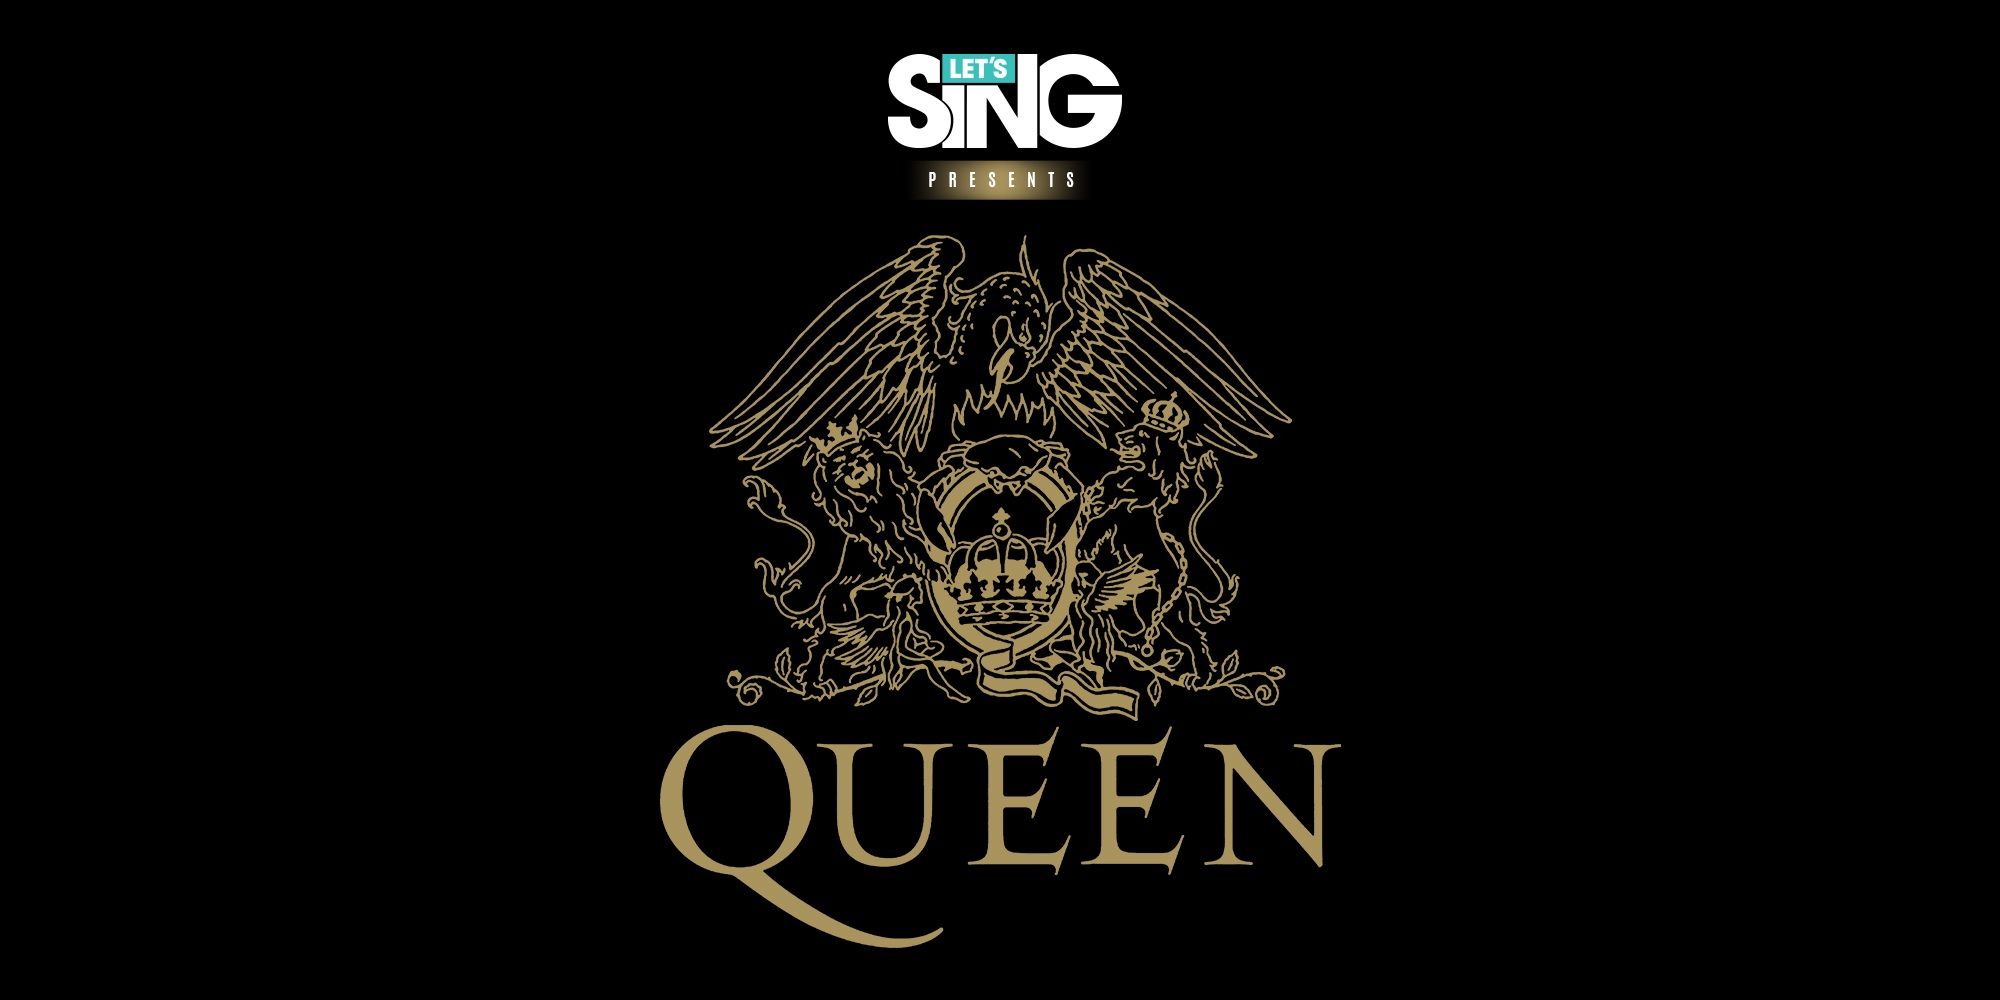 Let’s Sing Queen: una gran experiencia de karaoke